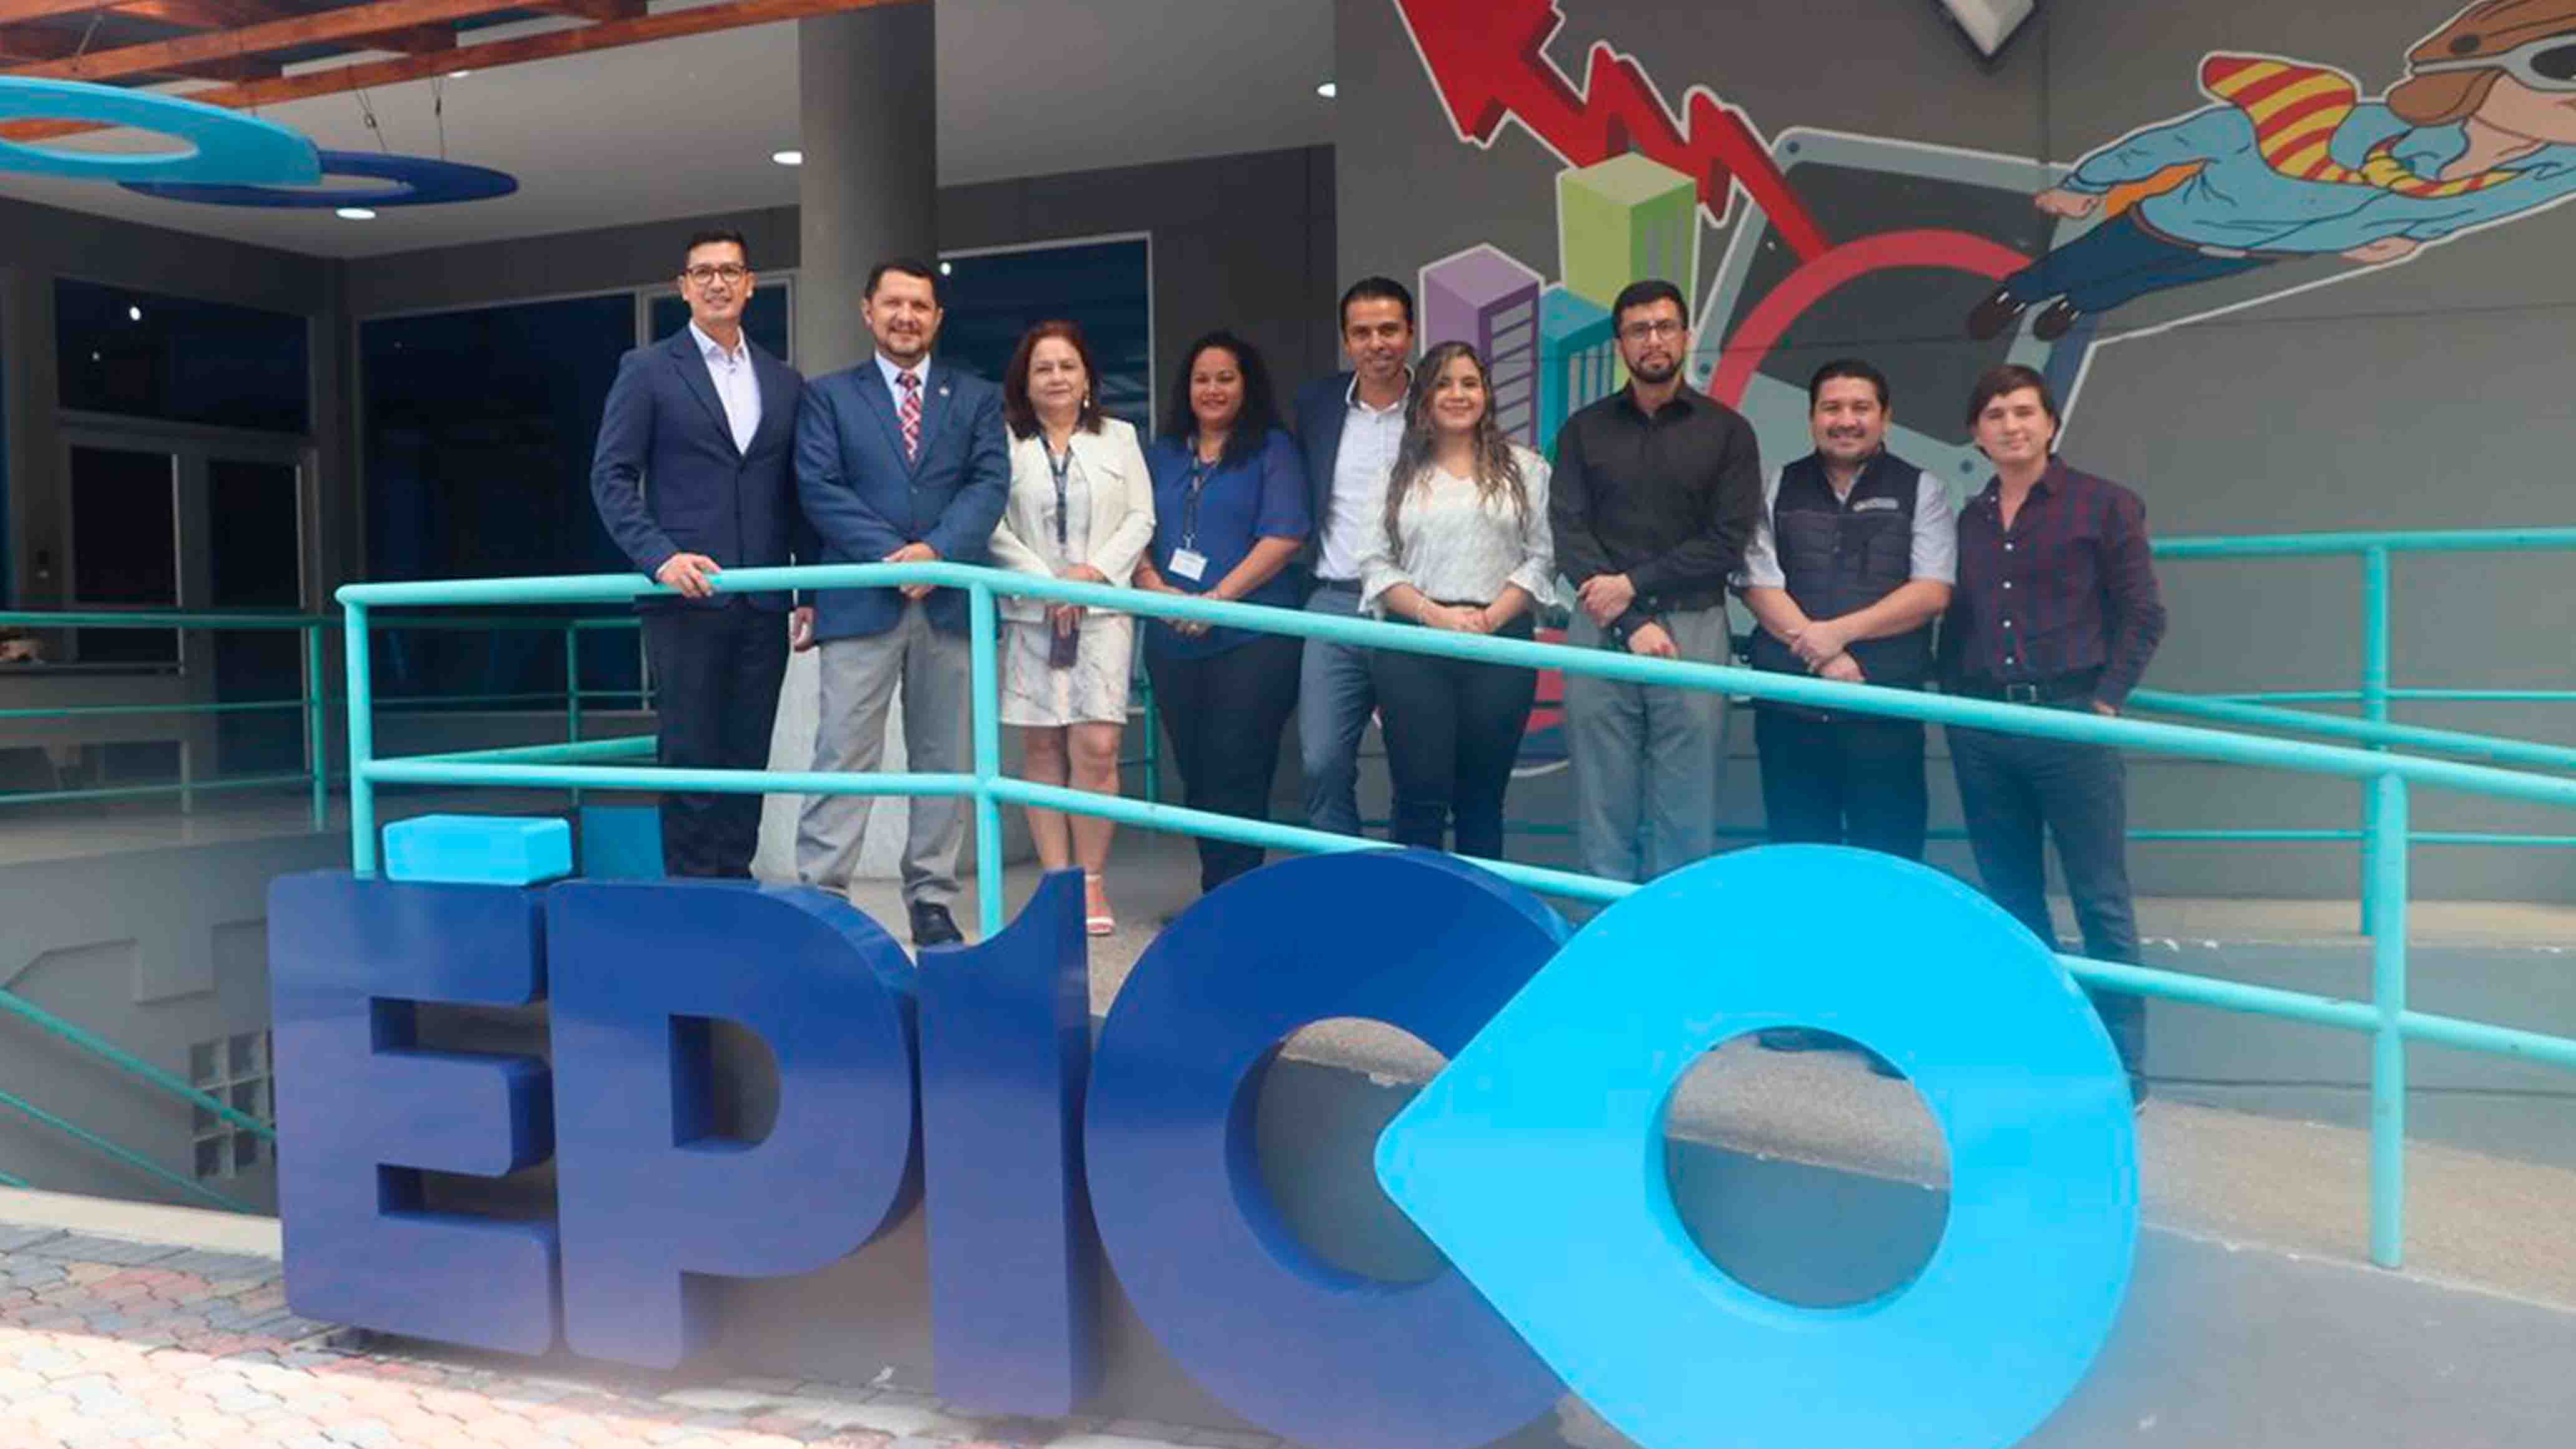 Sede Guayaquil impulsa el desarrollo académico y económico de la urbe a través de la firma de un convenio con ÉPICO